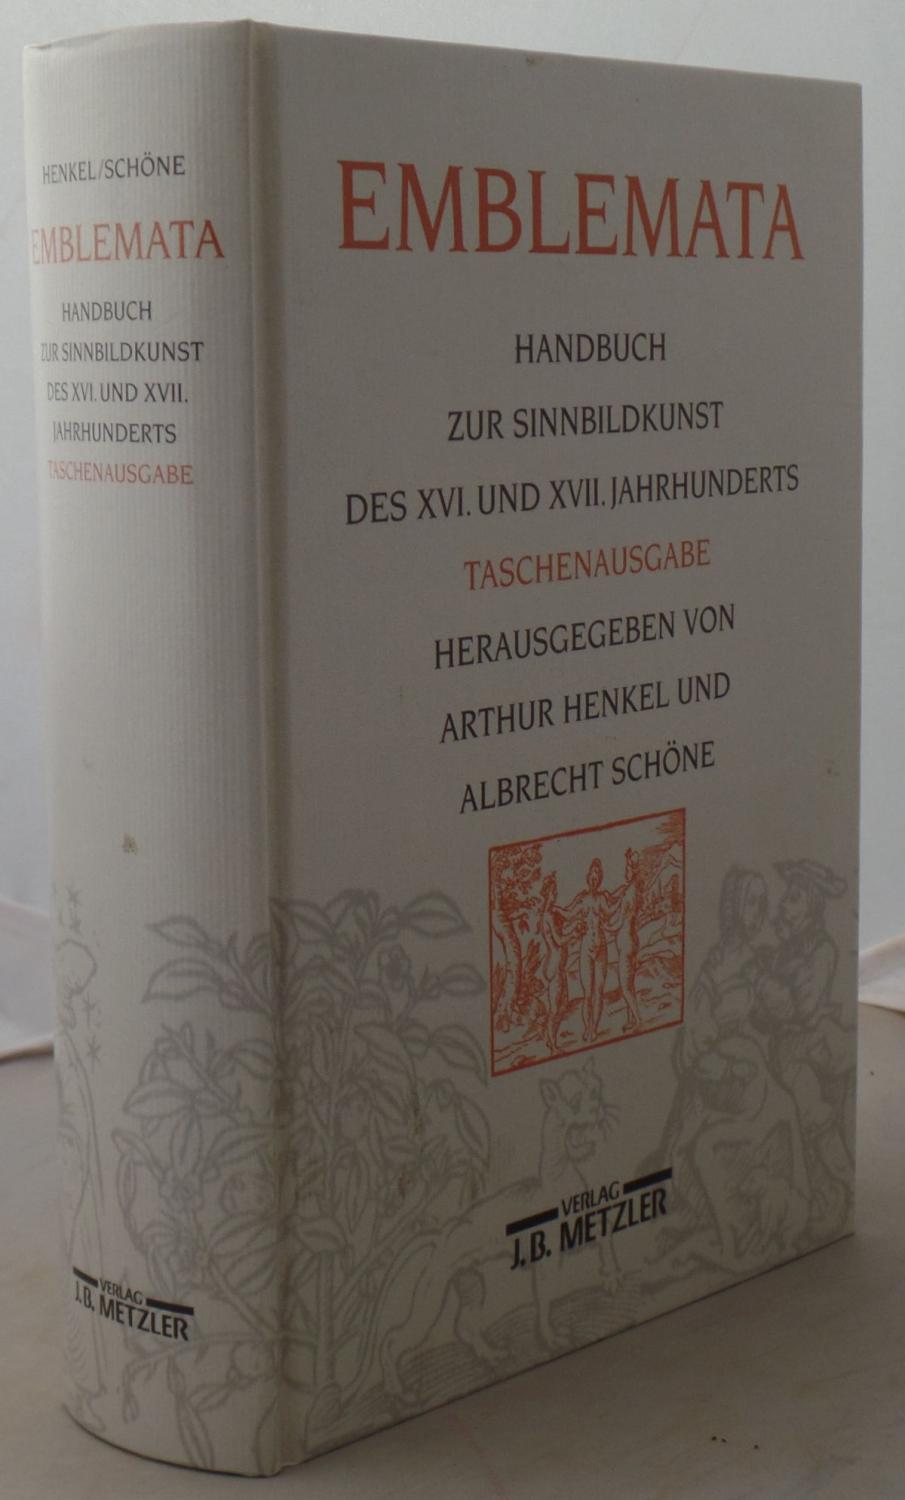 Emblemata. Handbuch zur Sinnbildkunst des XVI.und XVII.Jahrhunderts. Taschenausgabe.